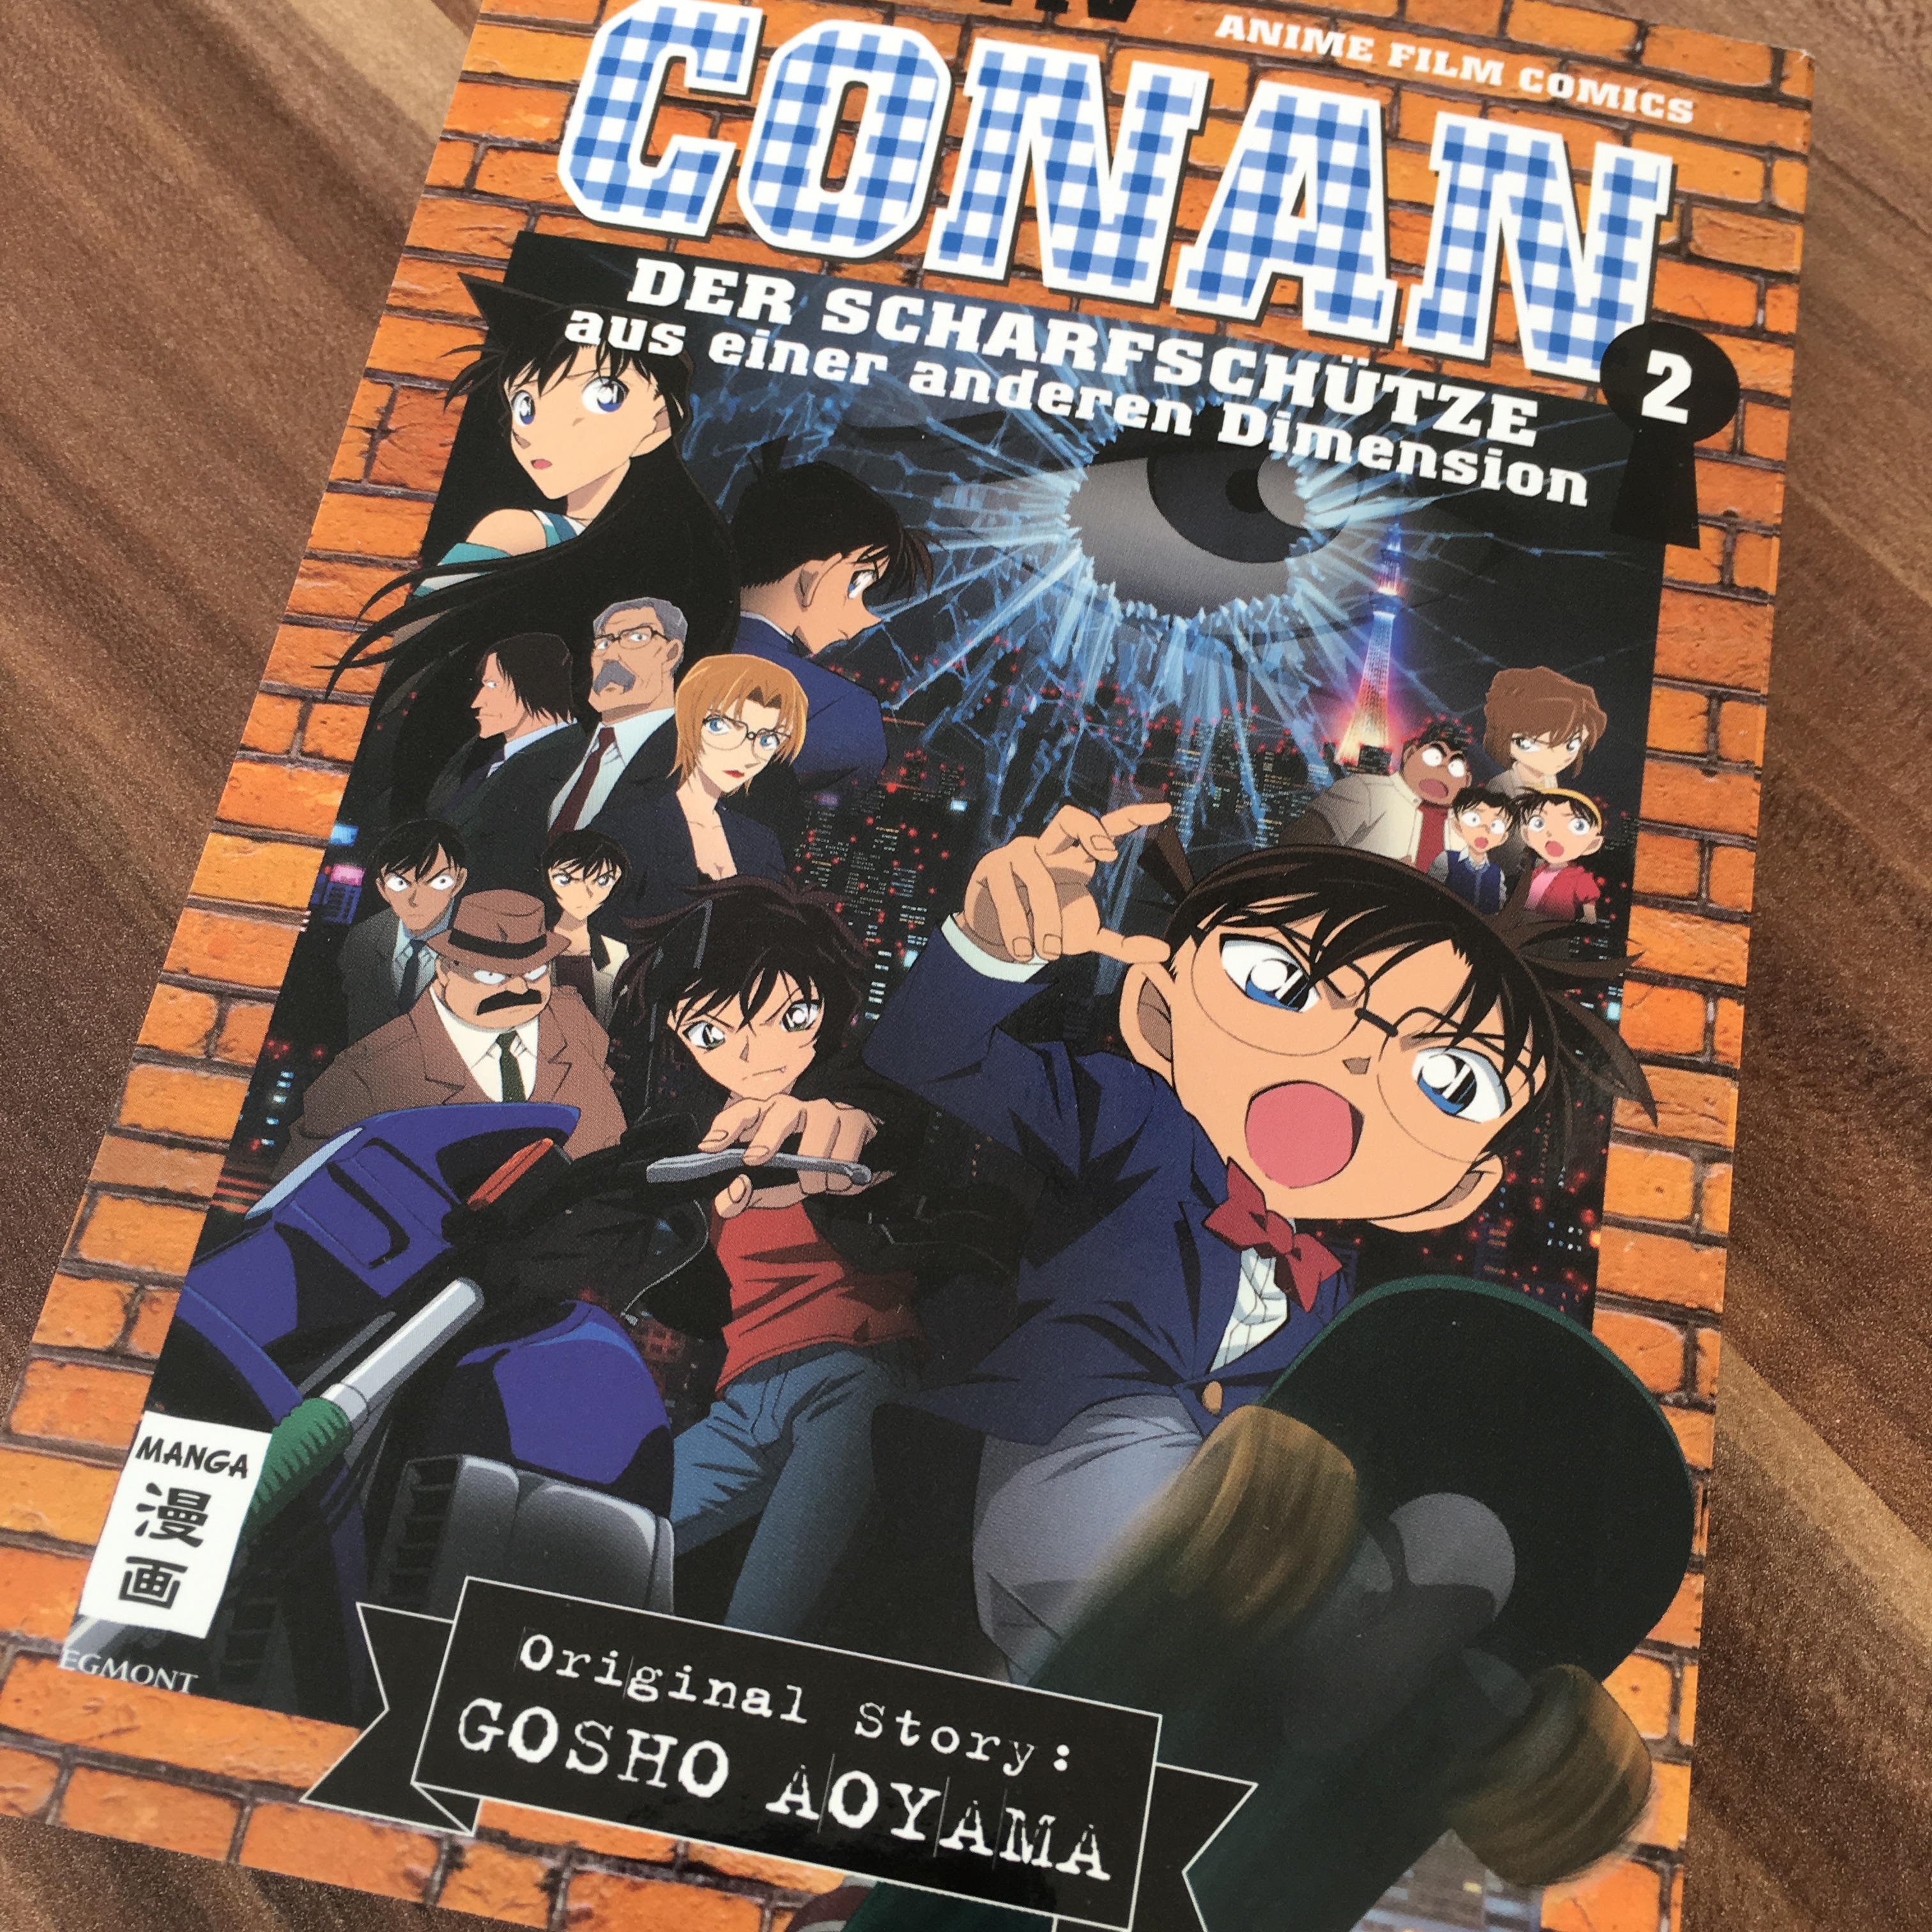 Detektiv Conan Der Scharfschütze aus einer anderen Dimension 2 Anime Film Comics